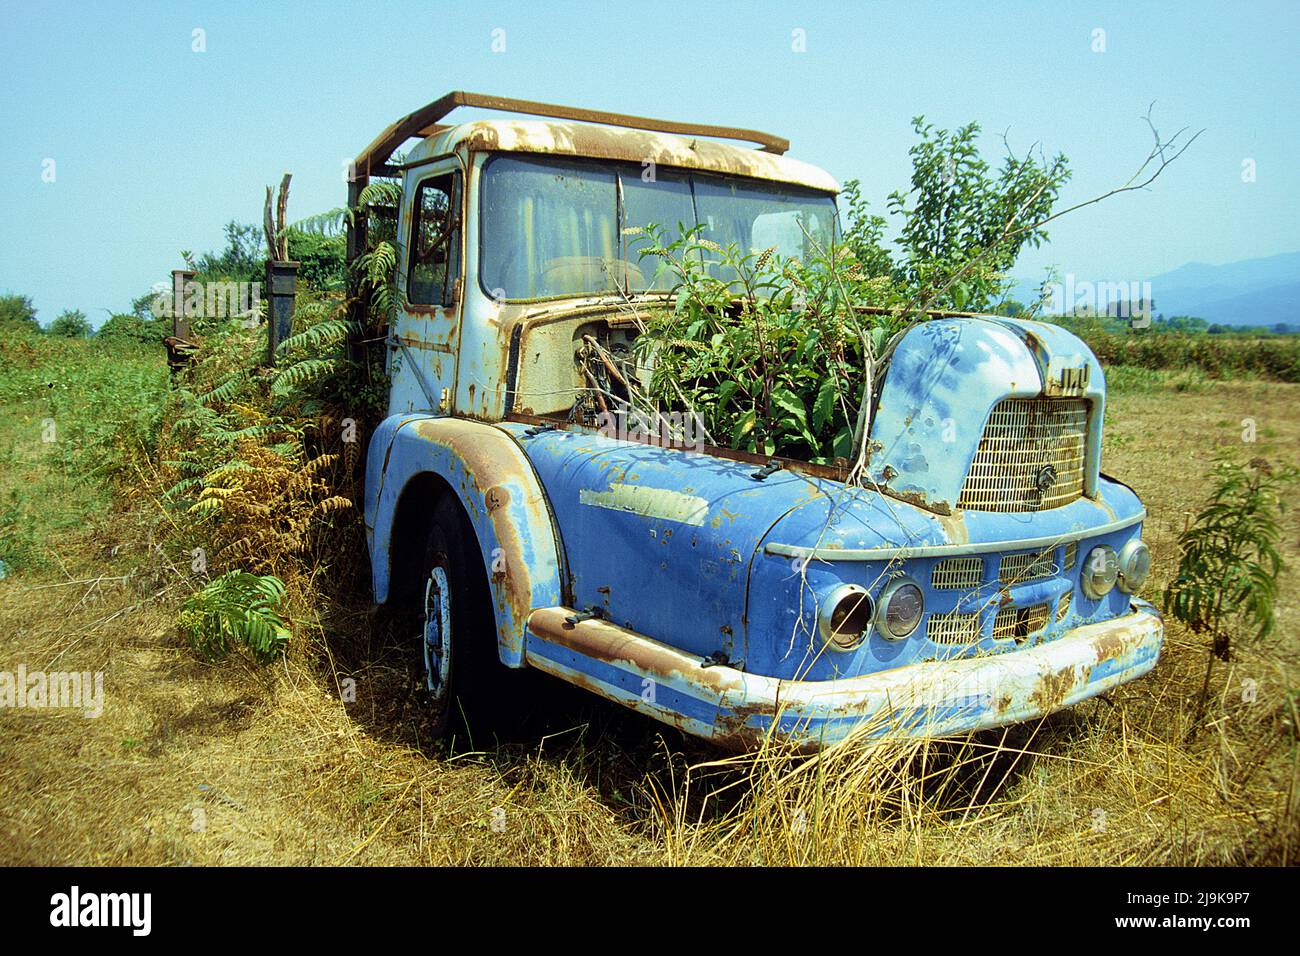 Camion abandonné, surcultivé avec des plantes, Corse, France, Méditerranée, Europe Banque D'Images